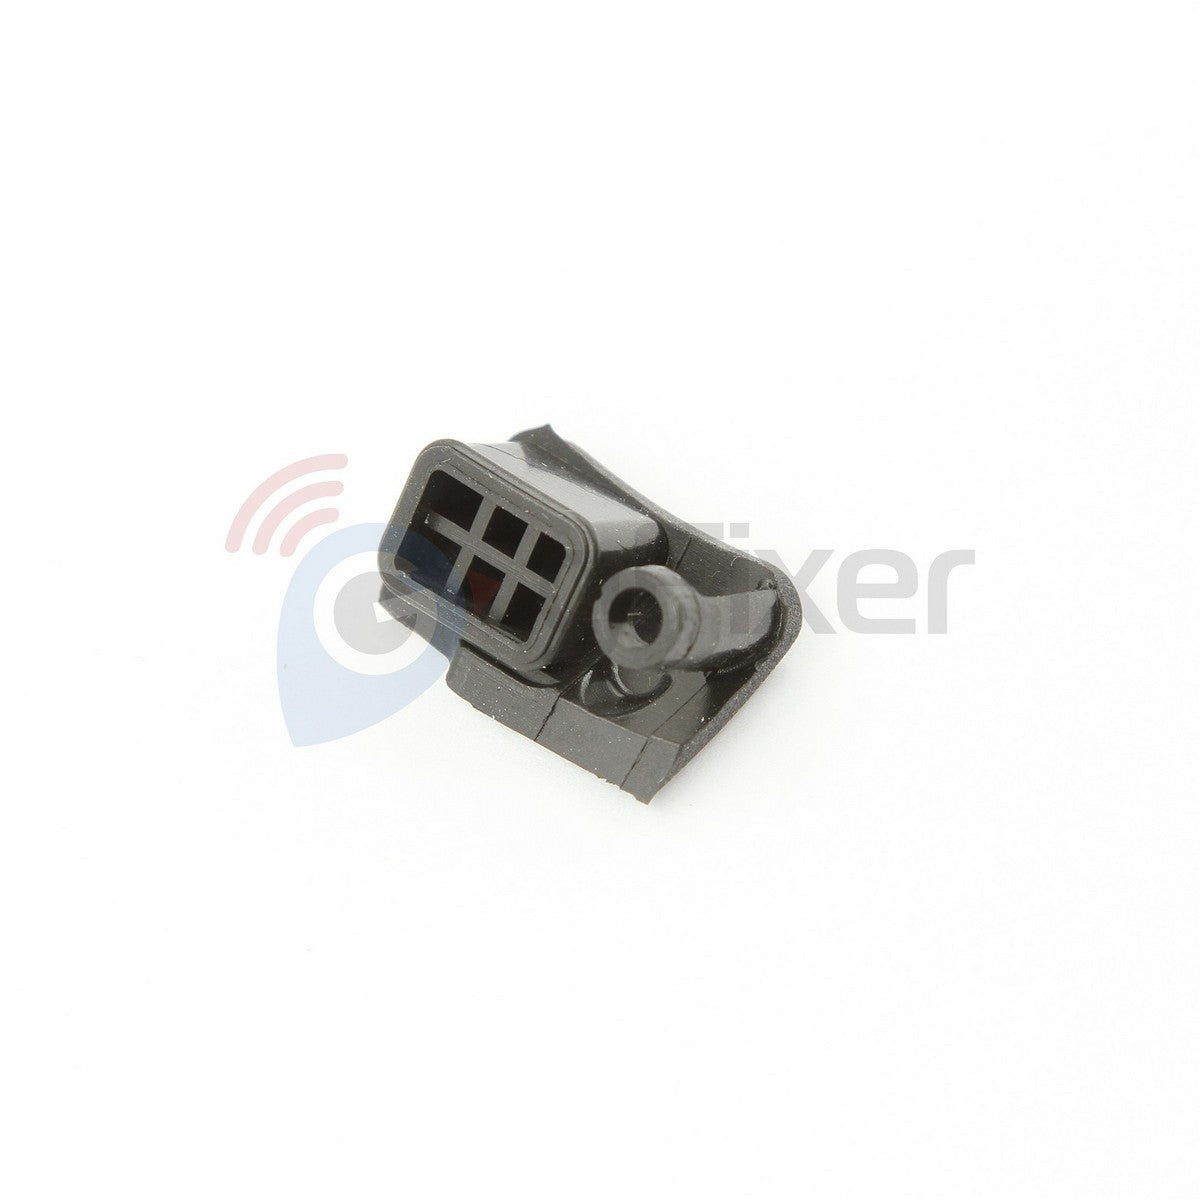 New Rubber cap USB Garmin Oregon 600 600t 650 650t part repair rubber